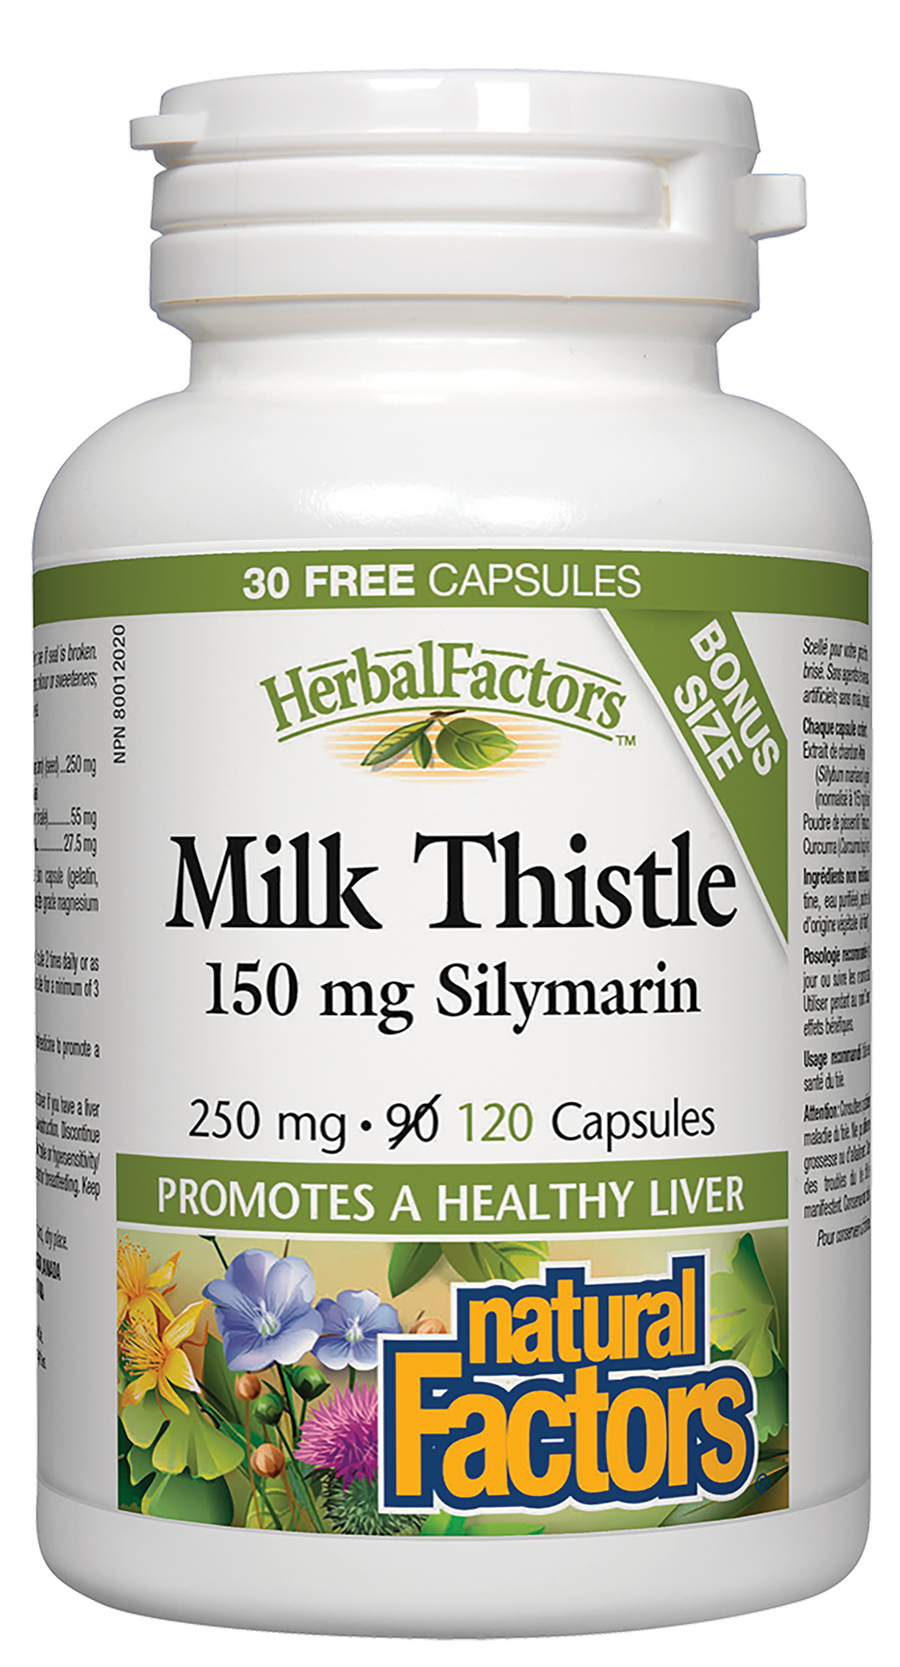 Natural Factors Milk Thistle 250 mg 120 Capsules